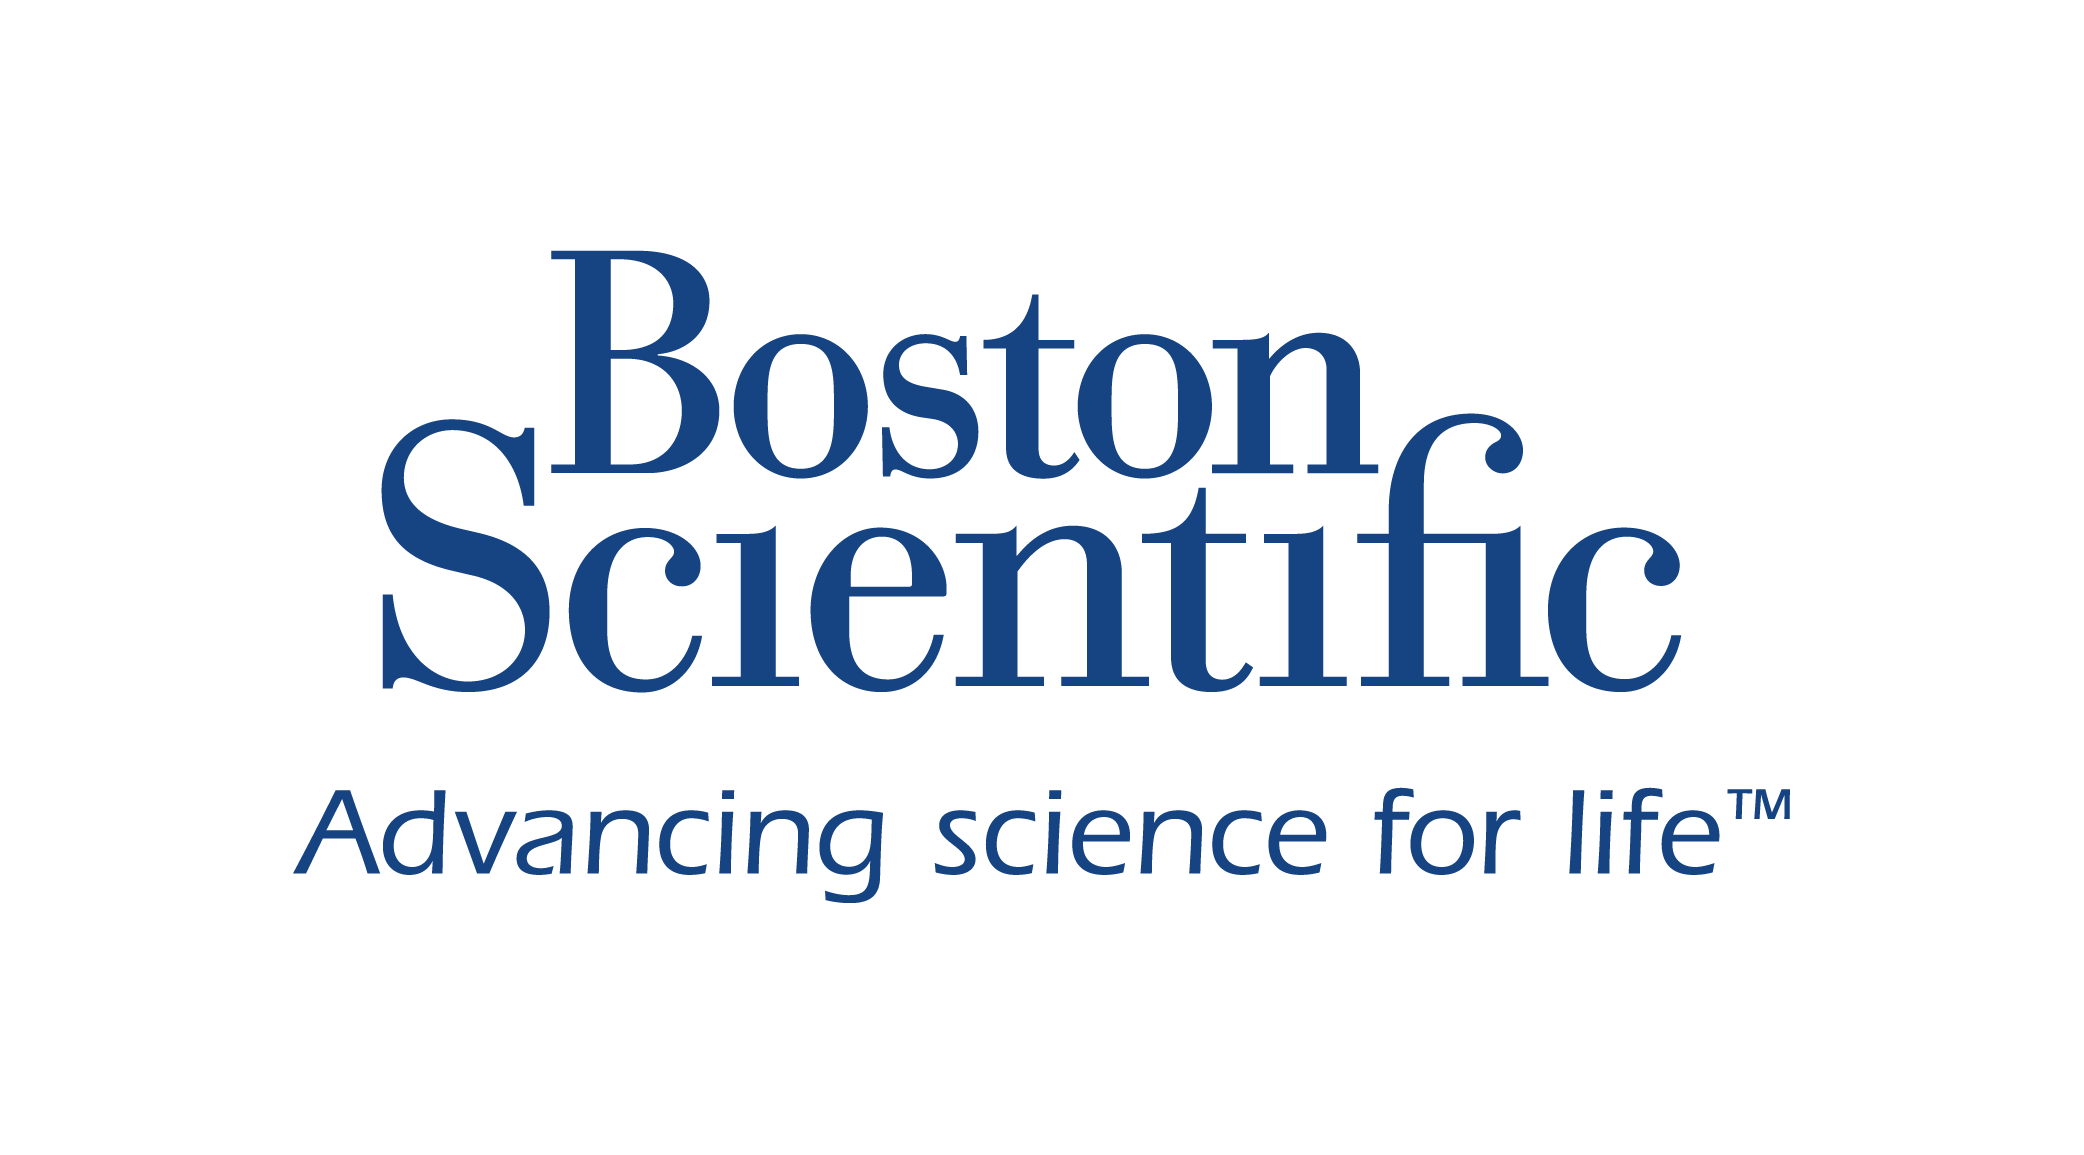 BostonScientific